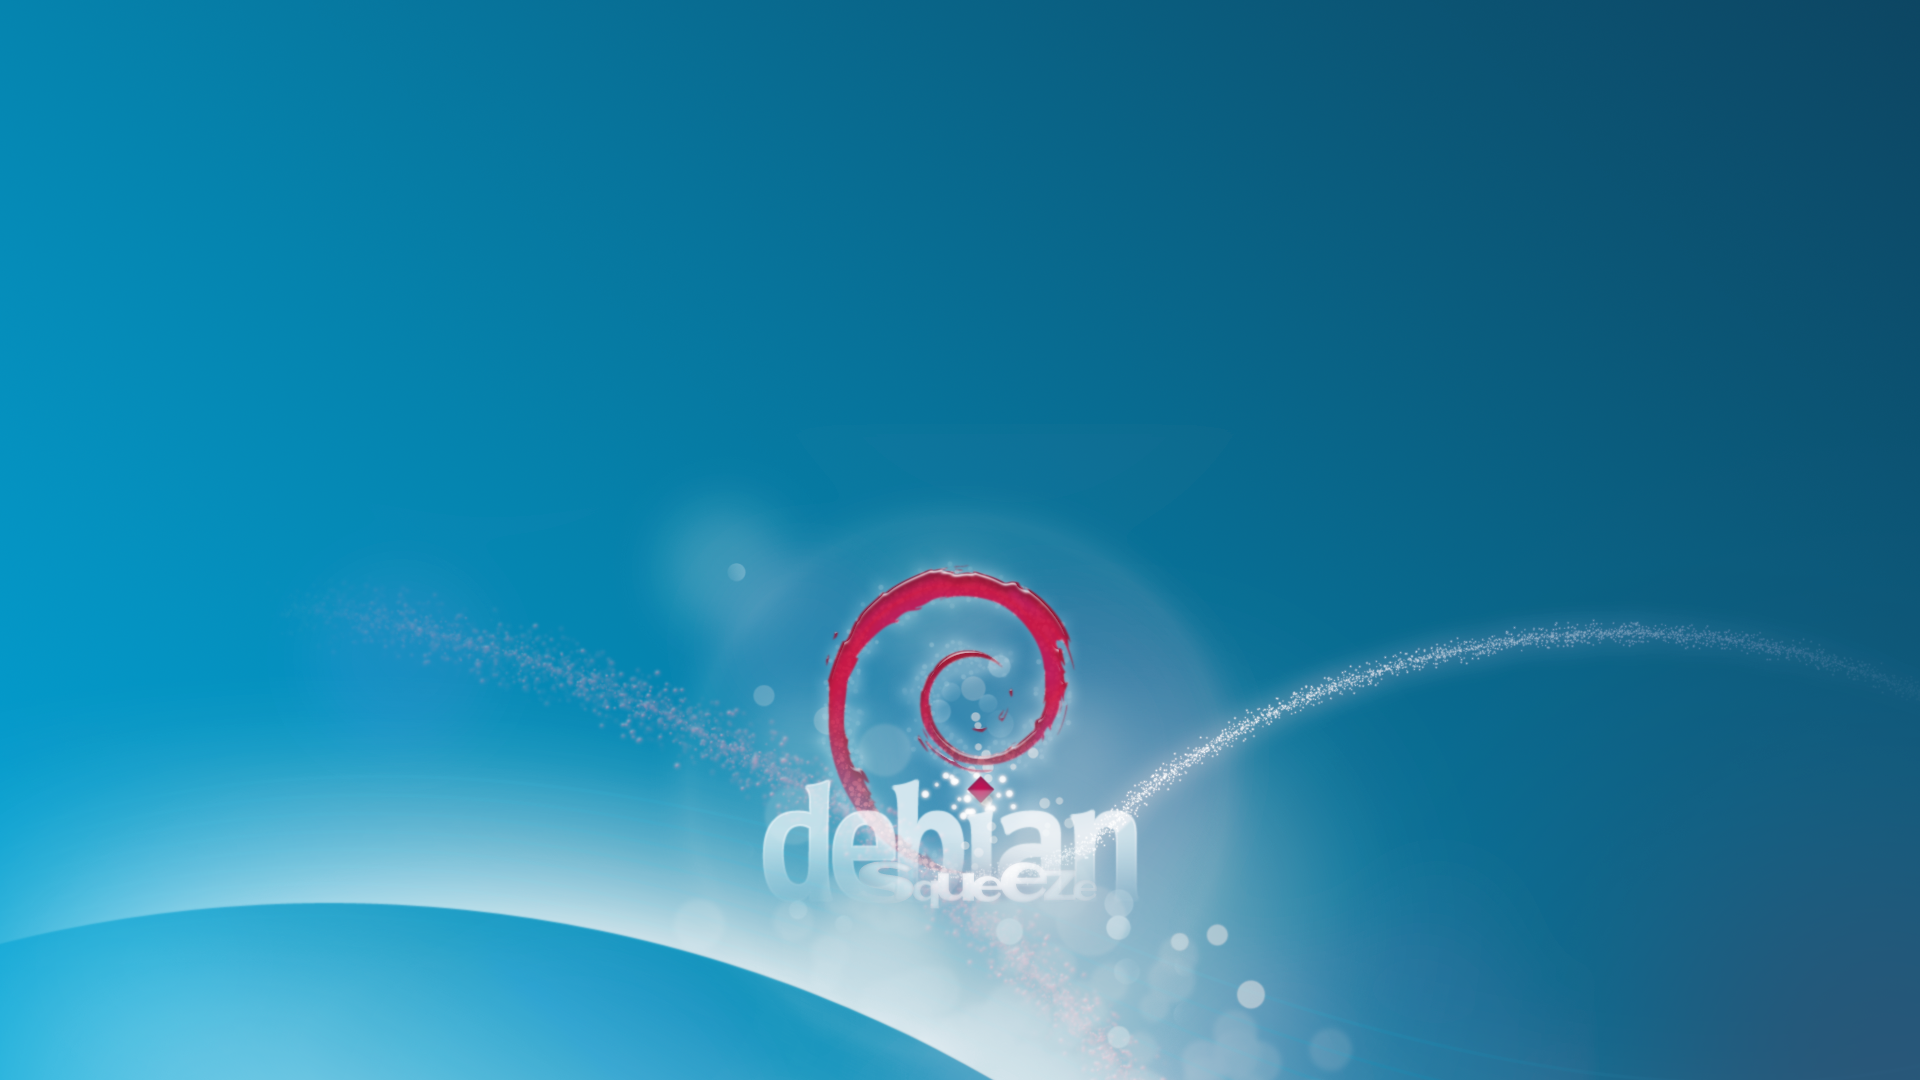 Debian Squeeze Wallpaper Tux Pla